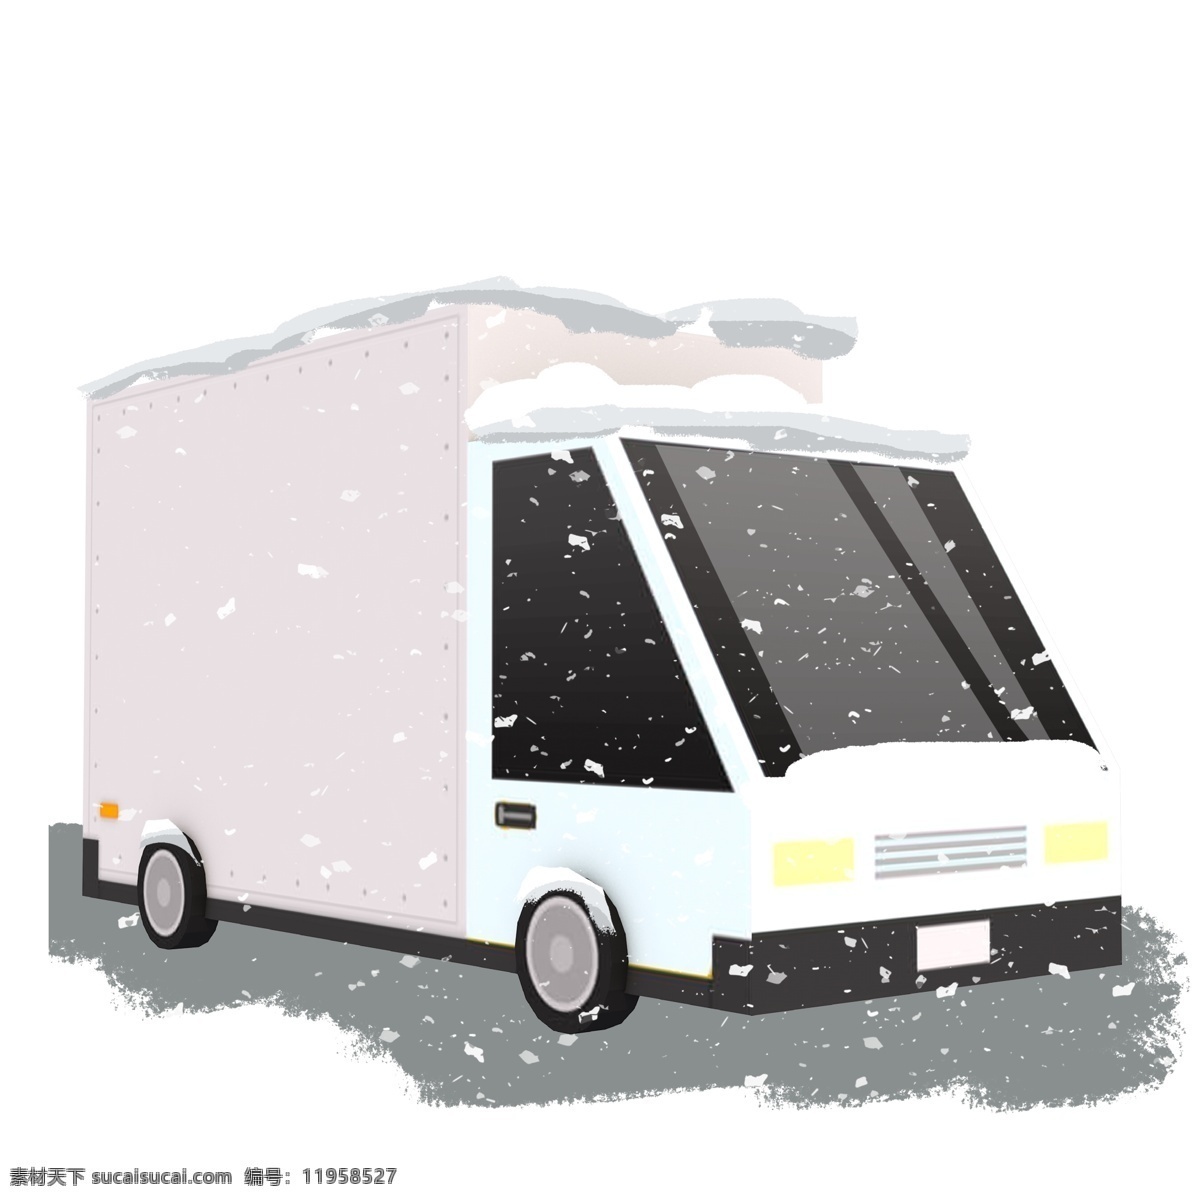 雪 覆盖 大卡 车 手绘 商用 元素 卡通 小清新 唯美 雪花 冬季 大卡车 插画设计